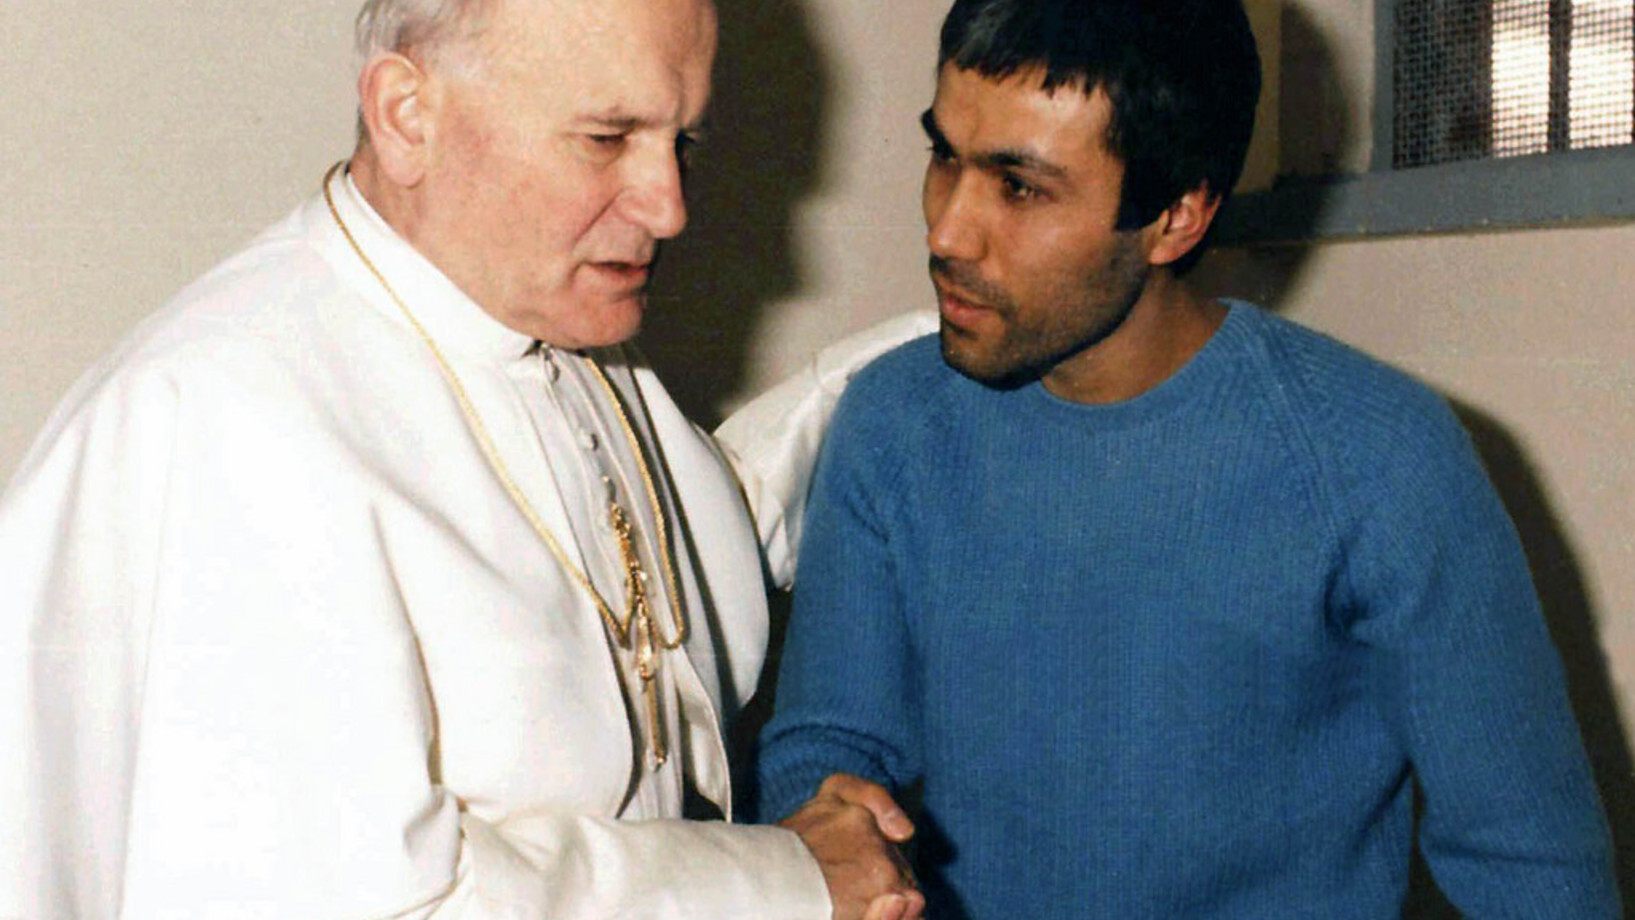 Am 27. Dezember 1983 besucht der Papst Mehmet Ali Ağca im Gefängnis in Rom und vergiebt ihm. Ali Ağca wird im Jahr 2000 amnestiert und in die Türkei ausgeliefert, wo er wegen Mordes an einem Journalisten zunächst zum Tode und dann zu lebenslanger Haft verurteilt wurde. Seit 2010 ist er ein freier Mann. (Foto: Keystone/AP/Arturo Mari)